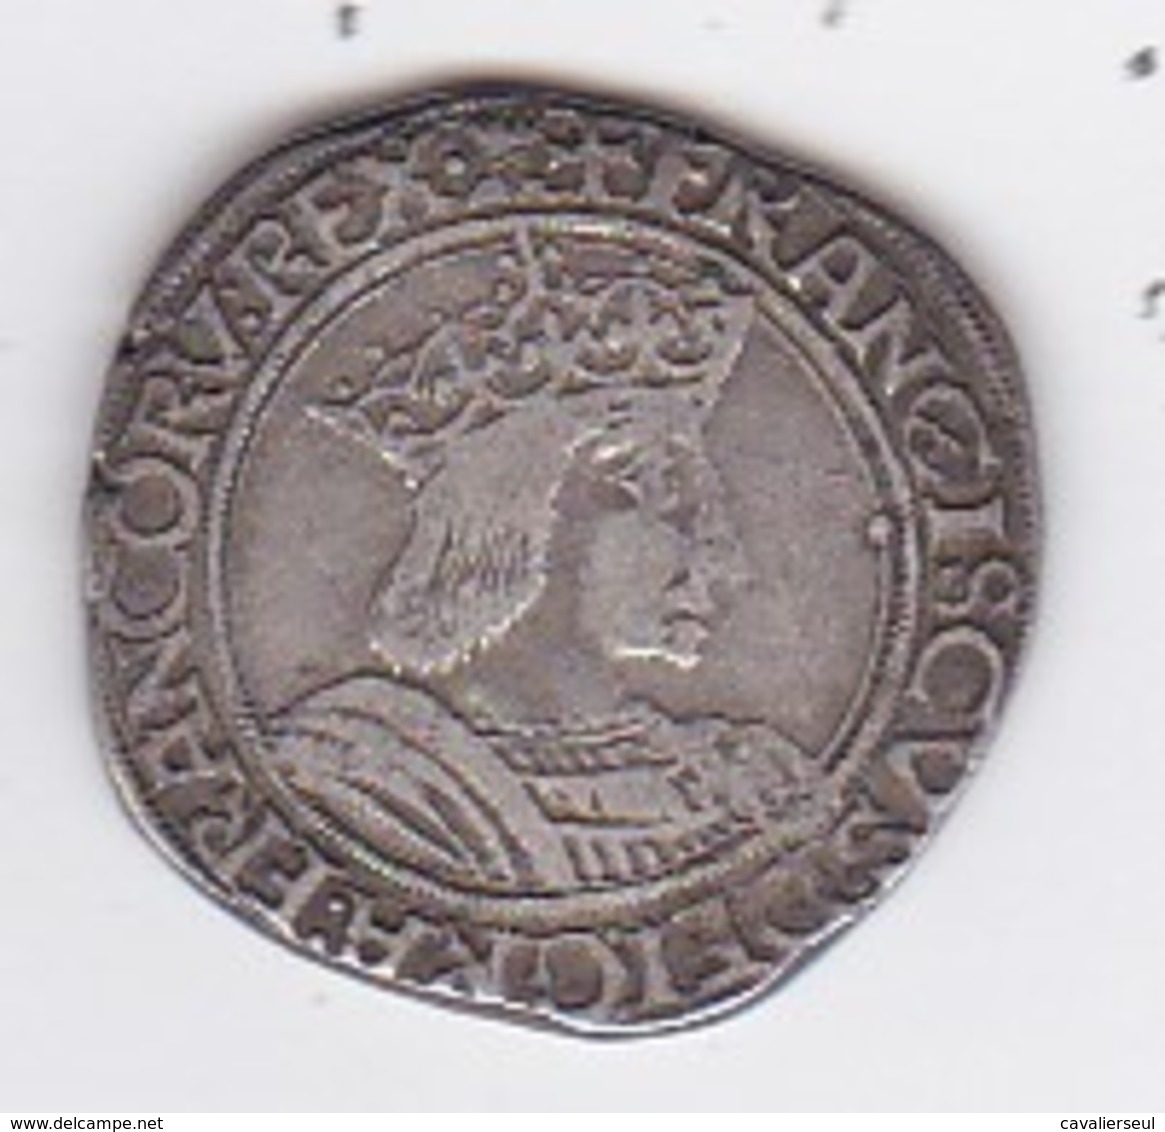 TESTON  (argent) - FRANCISCVS DG FRANCORV REX XPS VINCIT XPS REGNAT - 10gr. - 1515-1547 Francis I